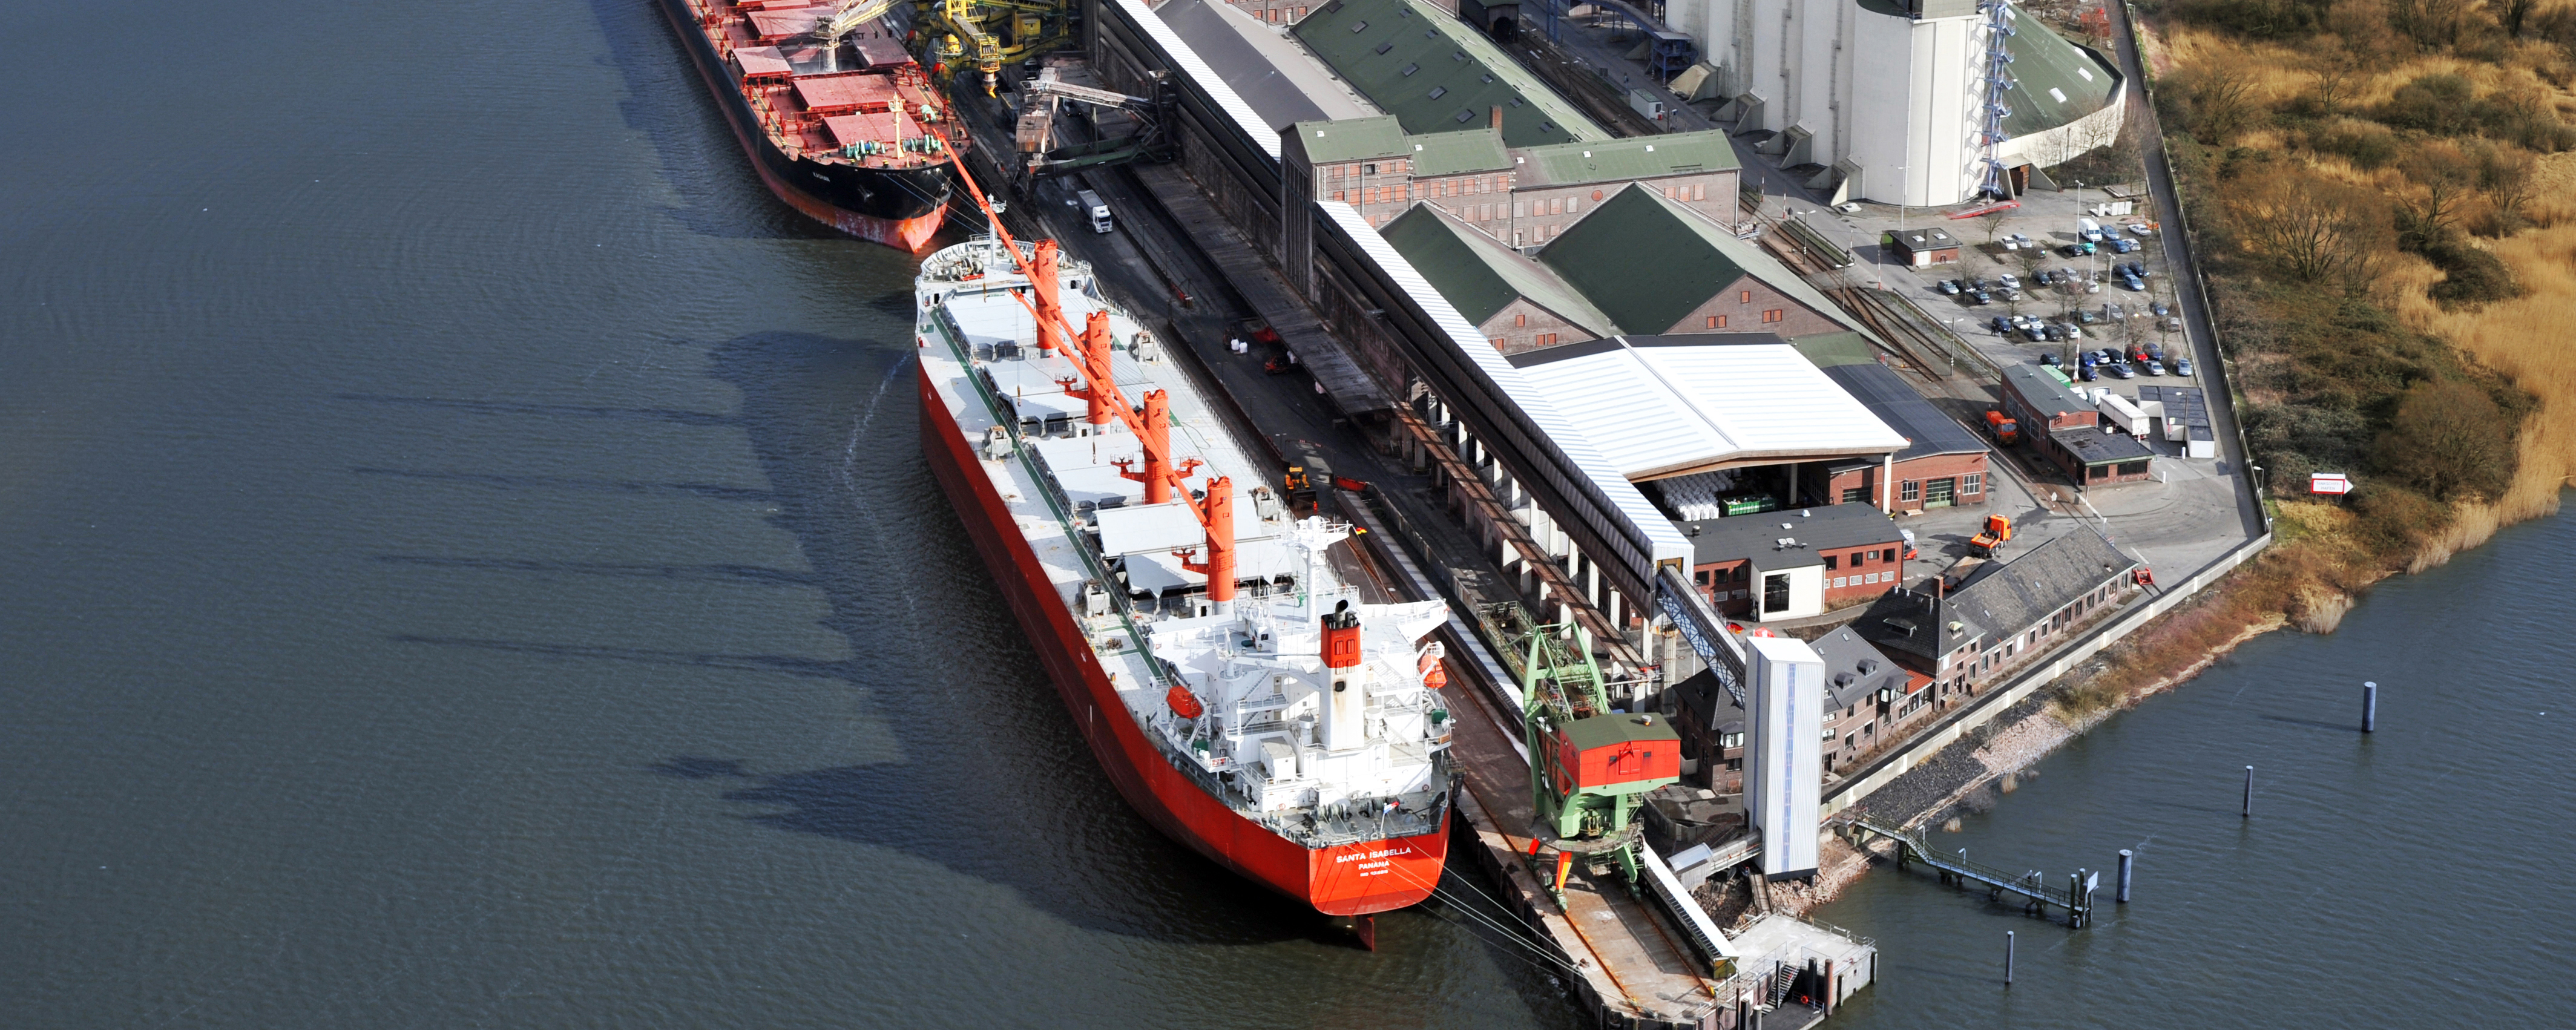 Vogelperspektive des K+S Standorts Hamburg Kalikai im Hamburger Hafen. Im Vordergrund sind zwei Binnenschiffe zu sehen. Dahinter ist der Hafenbetrieb zu sehen. 